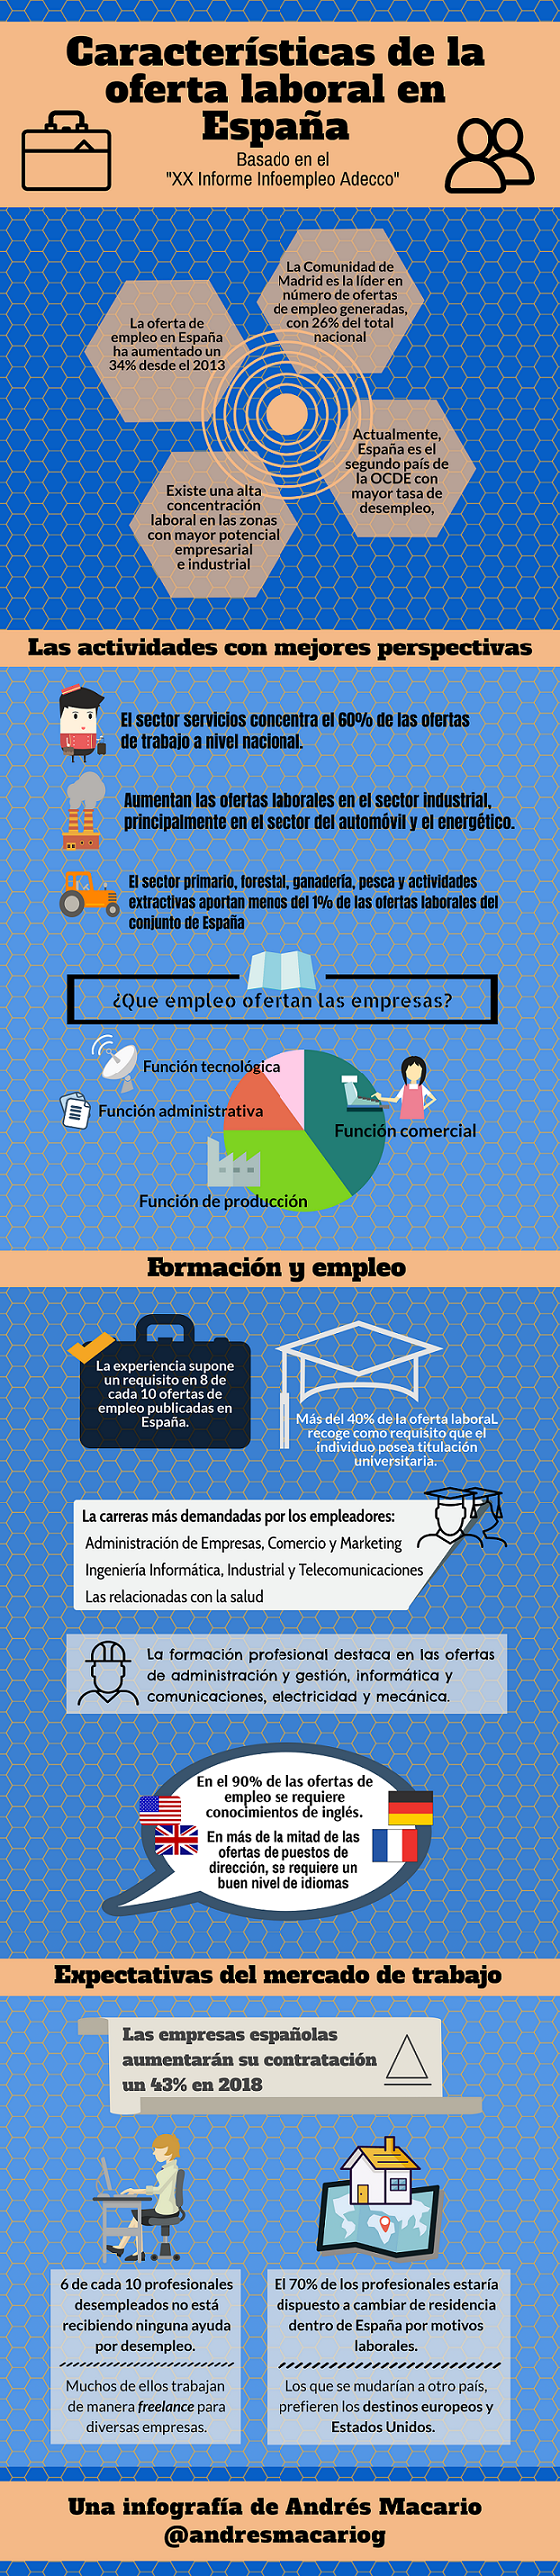 Características de la oferta laboral en España - Infografía Andrés Macario